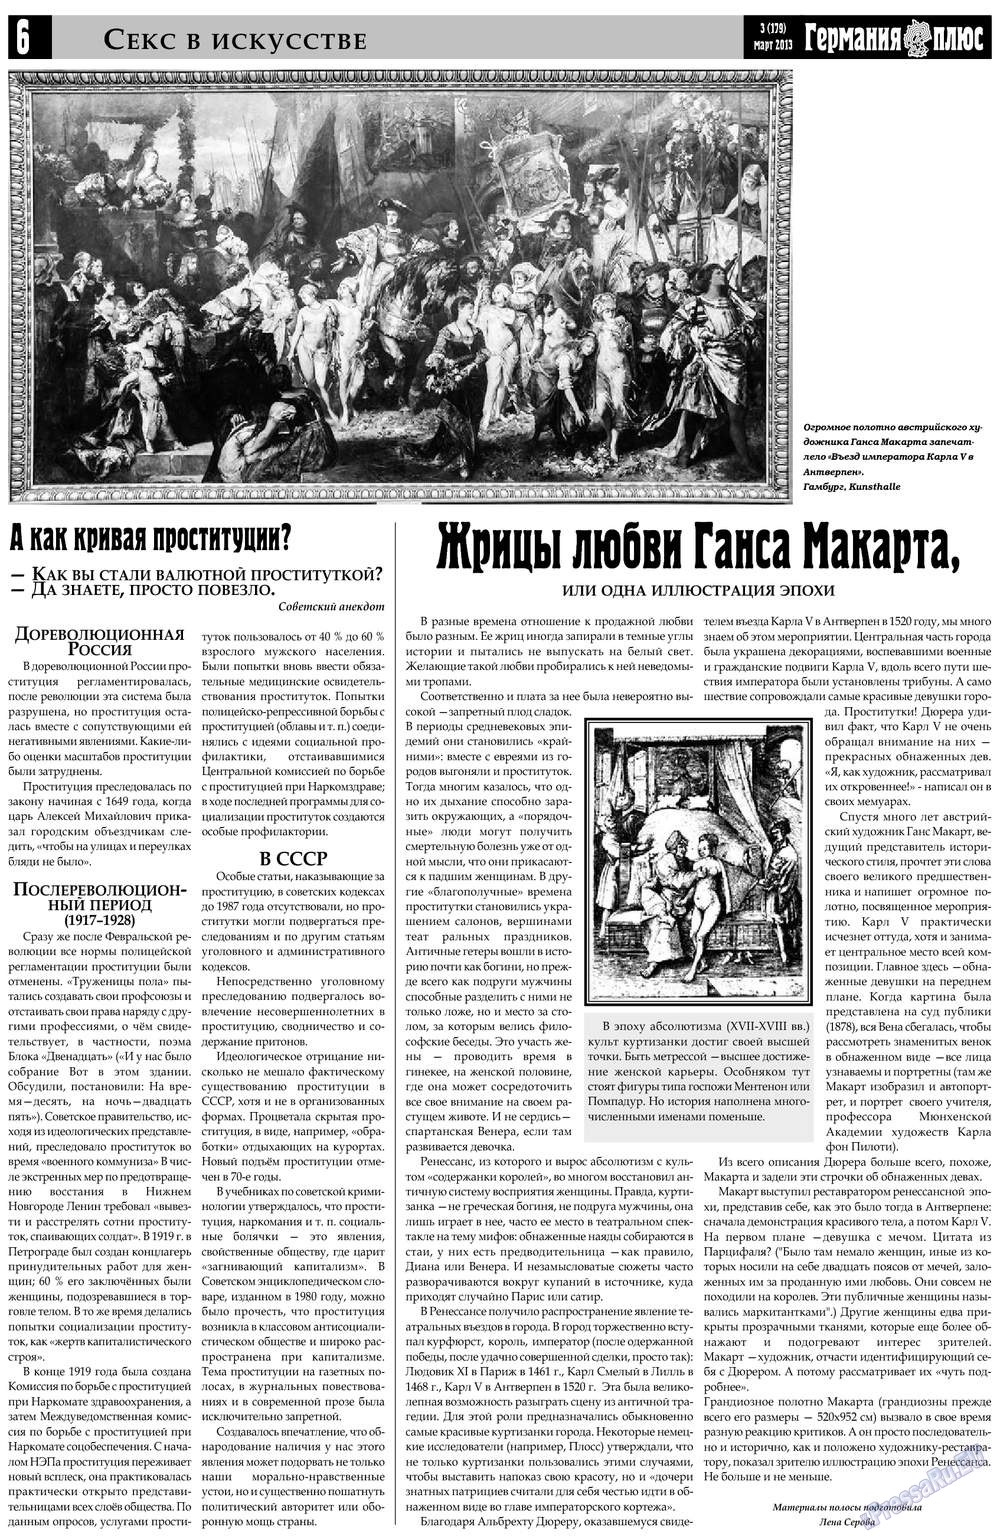 Германия плюс (газета). 2013 год, номер 3, стр. 6